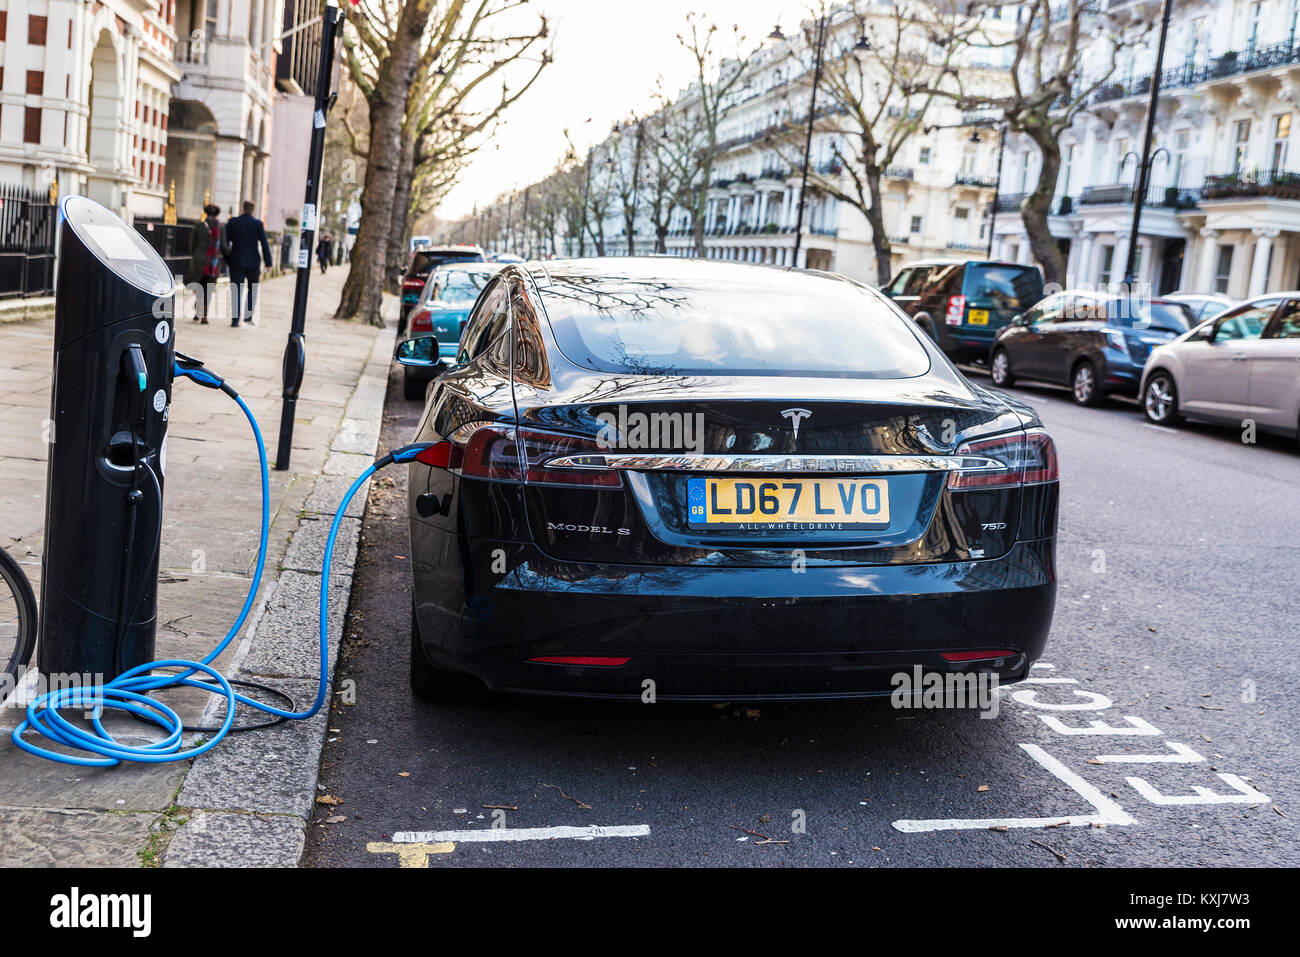 Londra, Gran Bretagna - 3 Gennaio 2018: auto elettrica Tesla Model S di ricaricare le batterie in una strada a Londra, Gran Bretagna Foto Stock